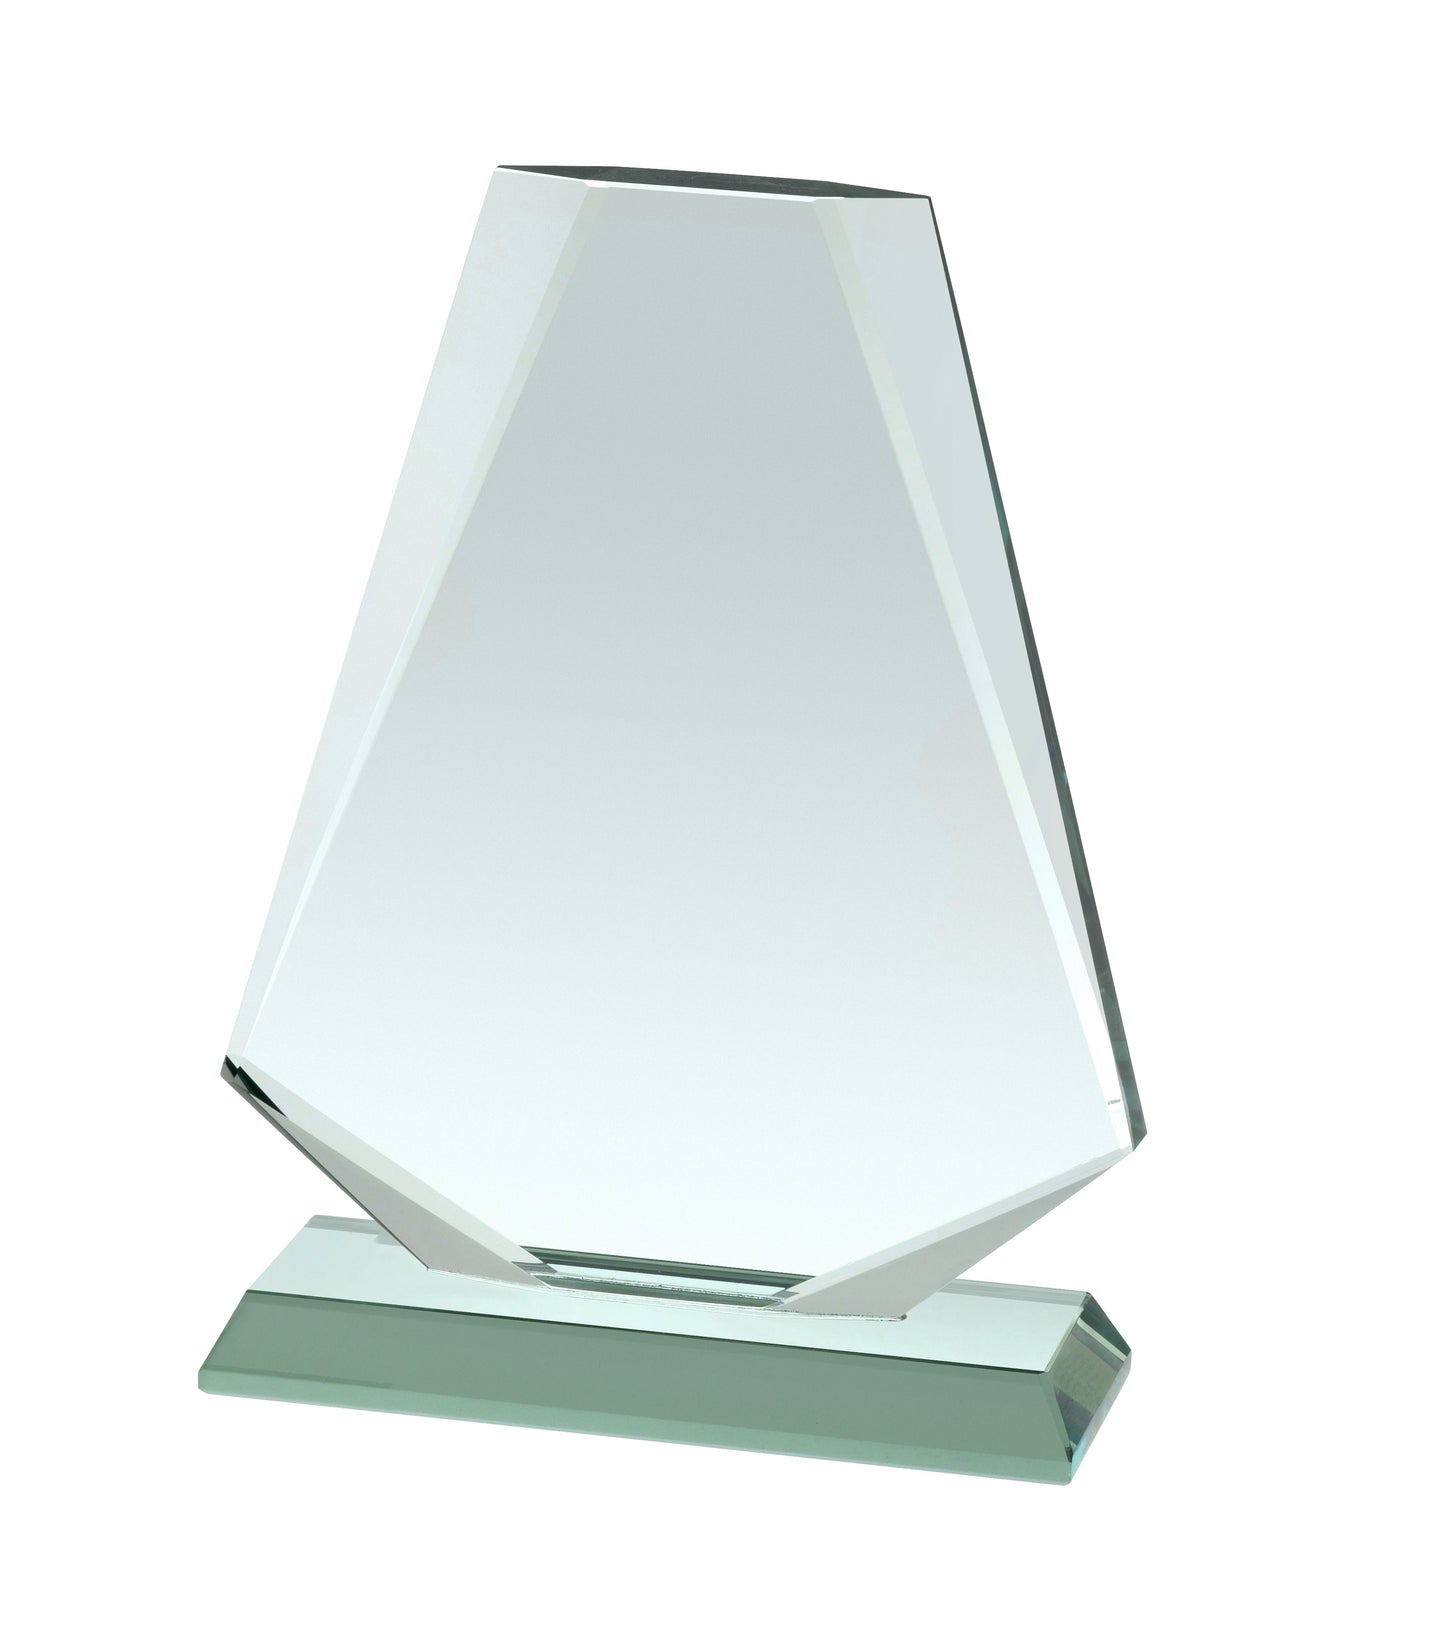 15mm Thick Jade Glass Bell Shape Award